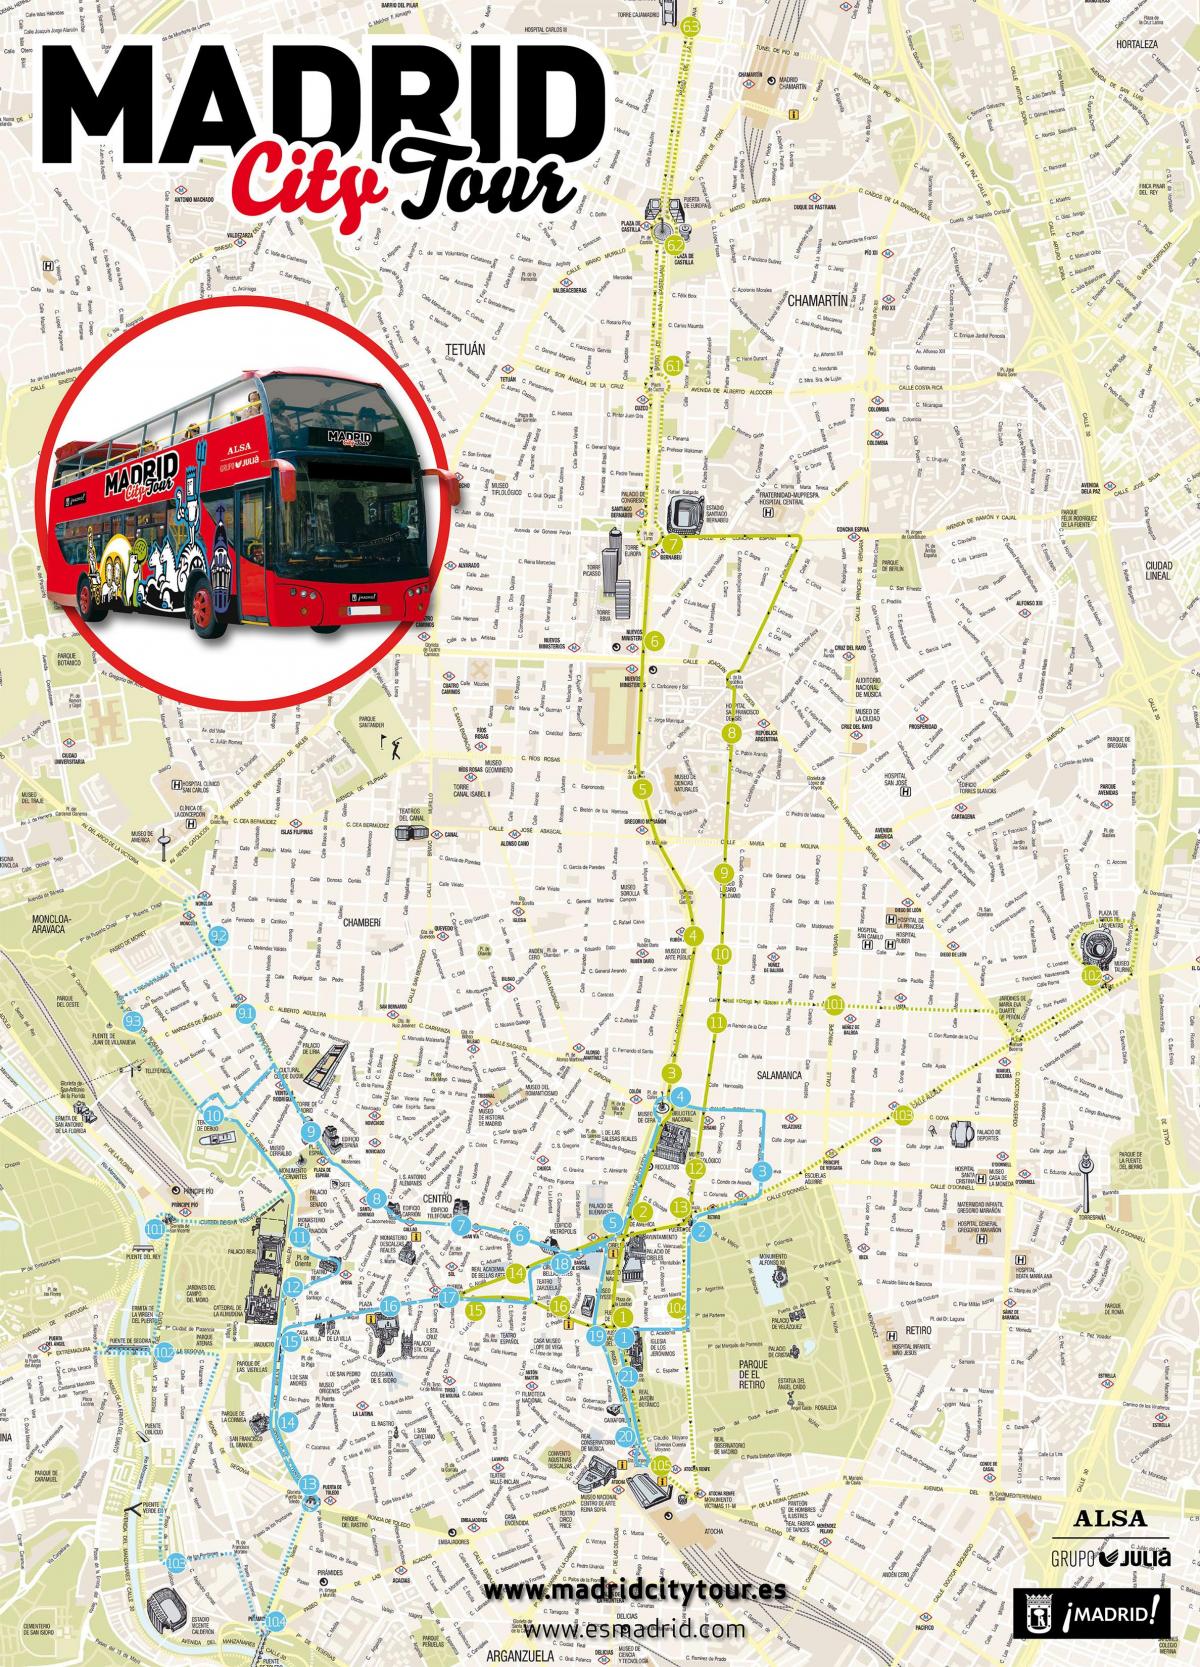 Madrid city tour en bus à la carte